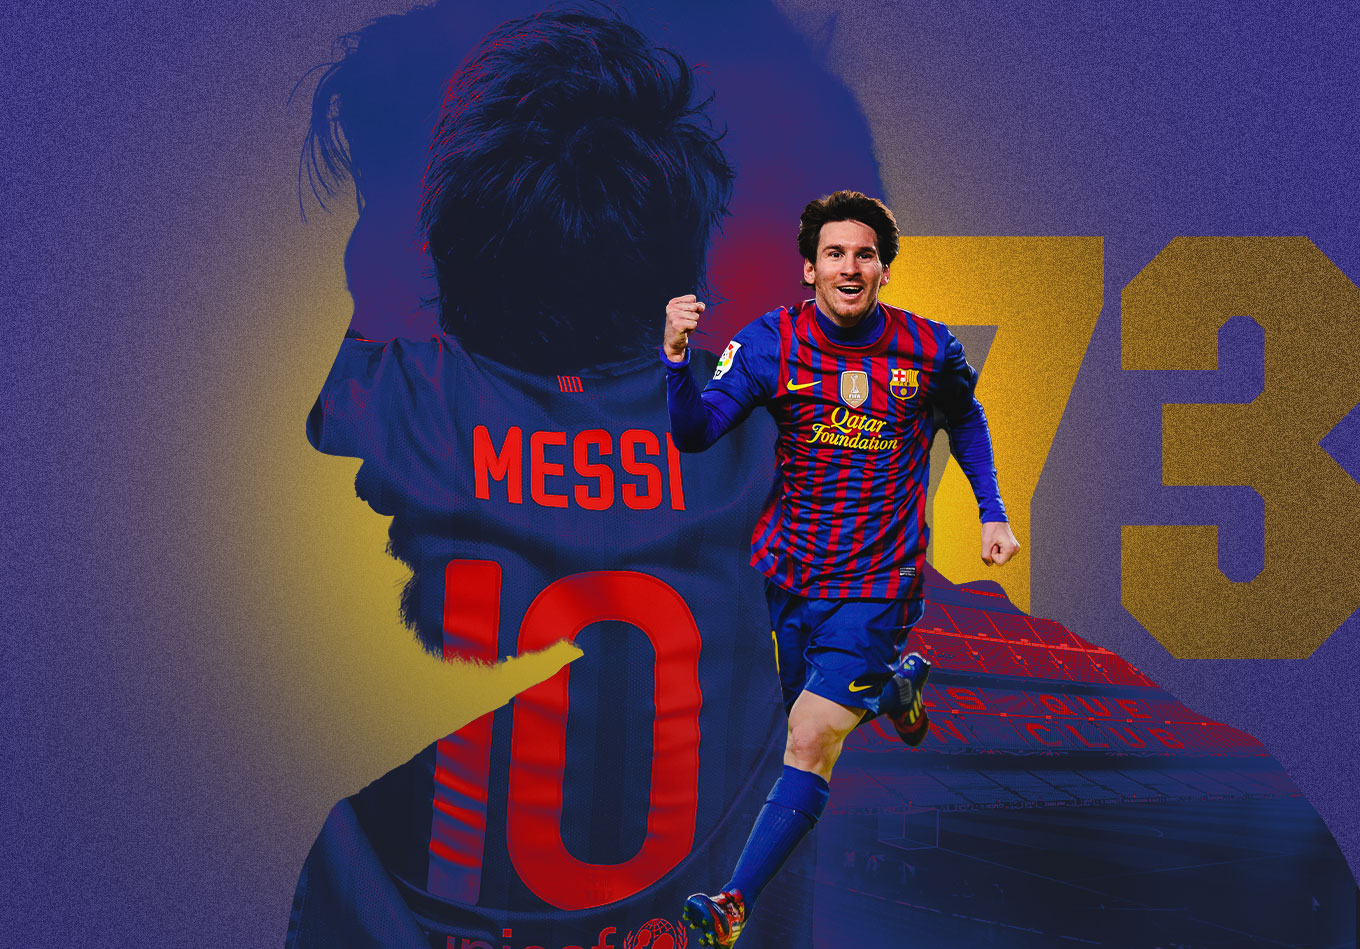 Theo bảng xếp hạng lương thế giới, Messi là một trong những cầu thủ có lương cao nhất thế giới. Lương của anh ta thể hiện rõ sức mạnh và độ uy tín của anh ta trong giới bóng đá. Hãy khám phá thêm về lương Messi và các cầu thủ có thu nhập cao nhất trong bảng xếp hạng của chúng tôi.